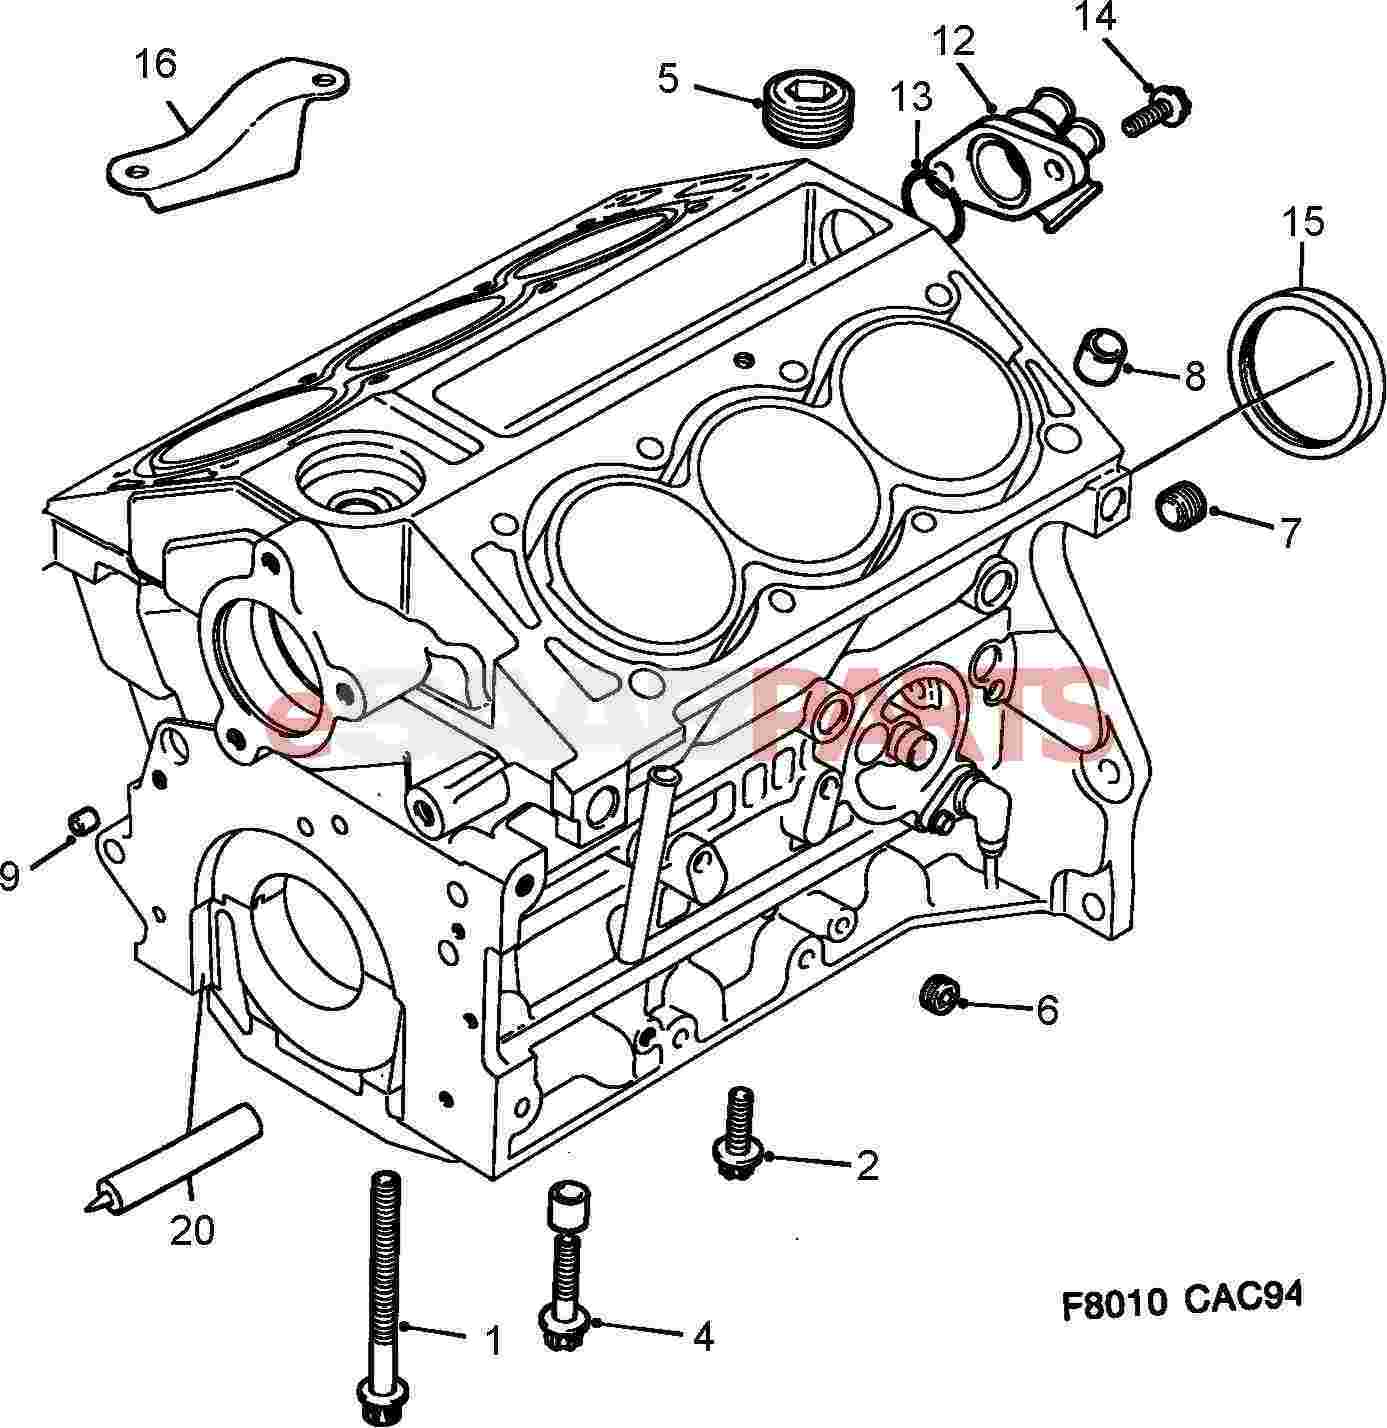 11049133] SAAB Screw Plug - Saab Parts from eSaabParts.com